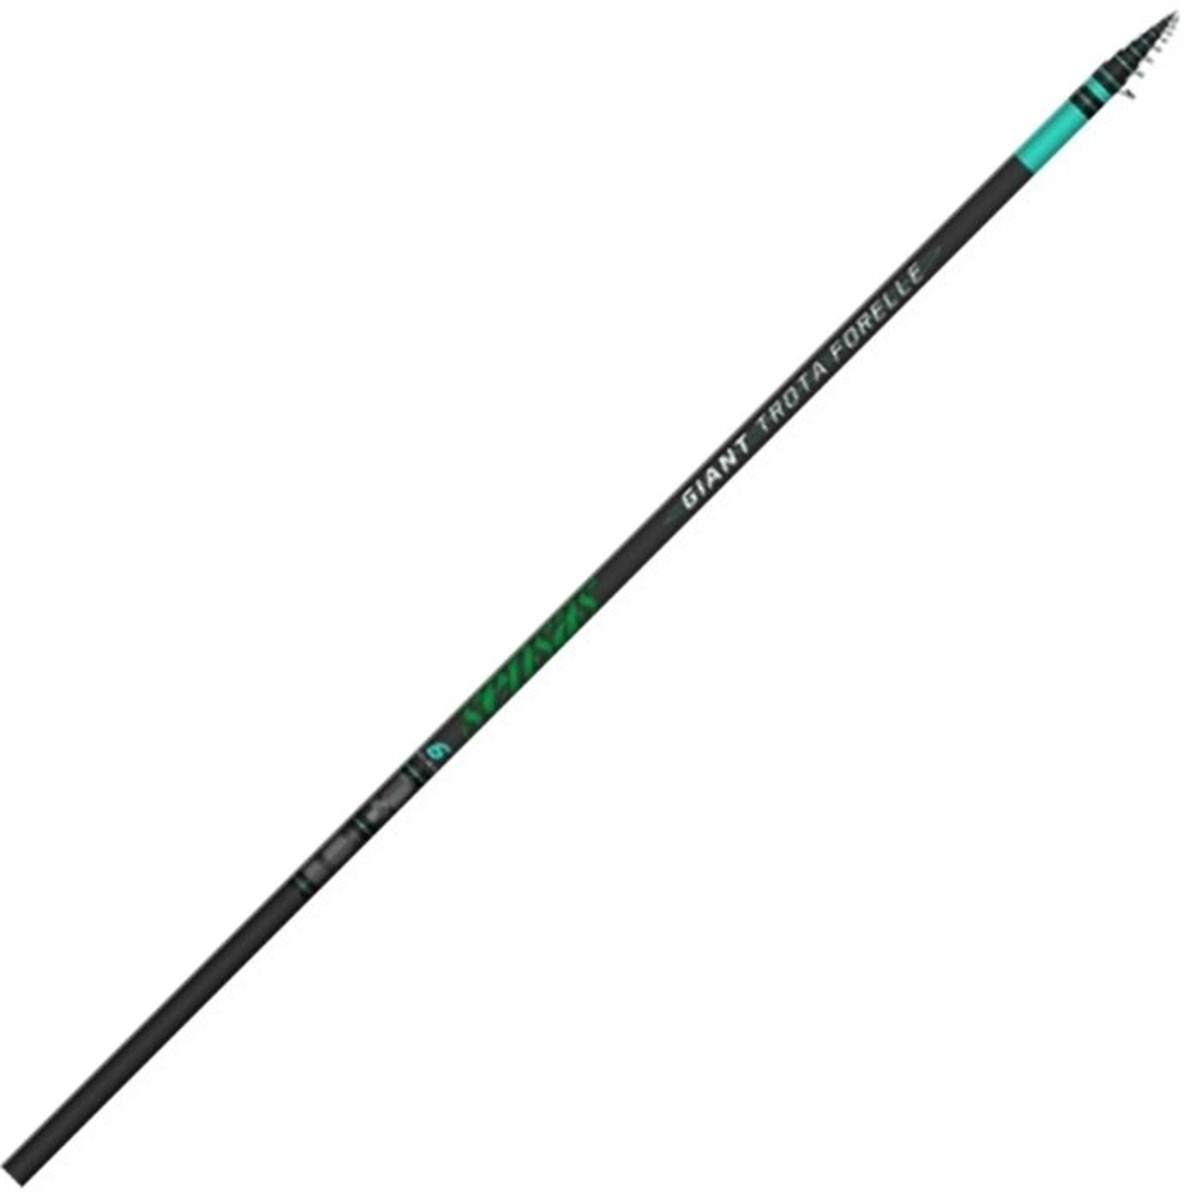 Sensas Giant trota Forelle Rod - 4.50 m - 20-35 g 